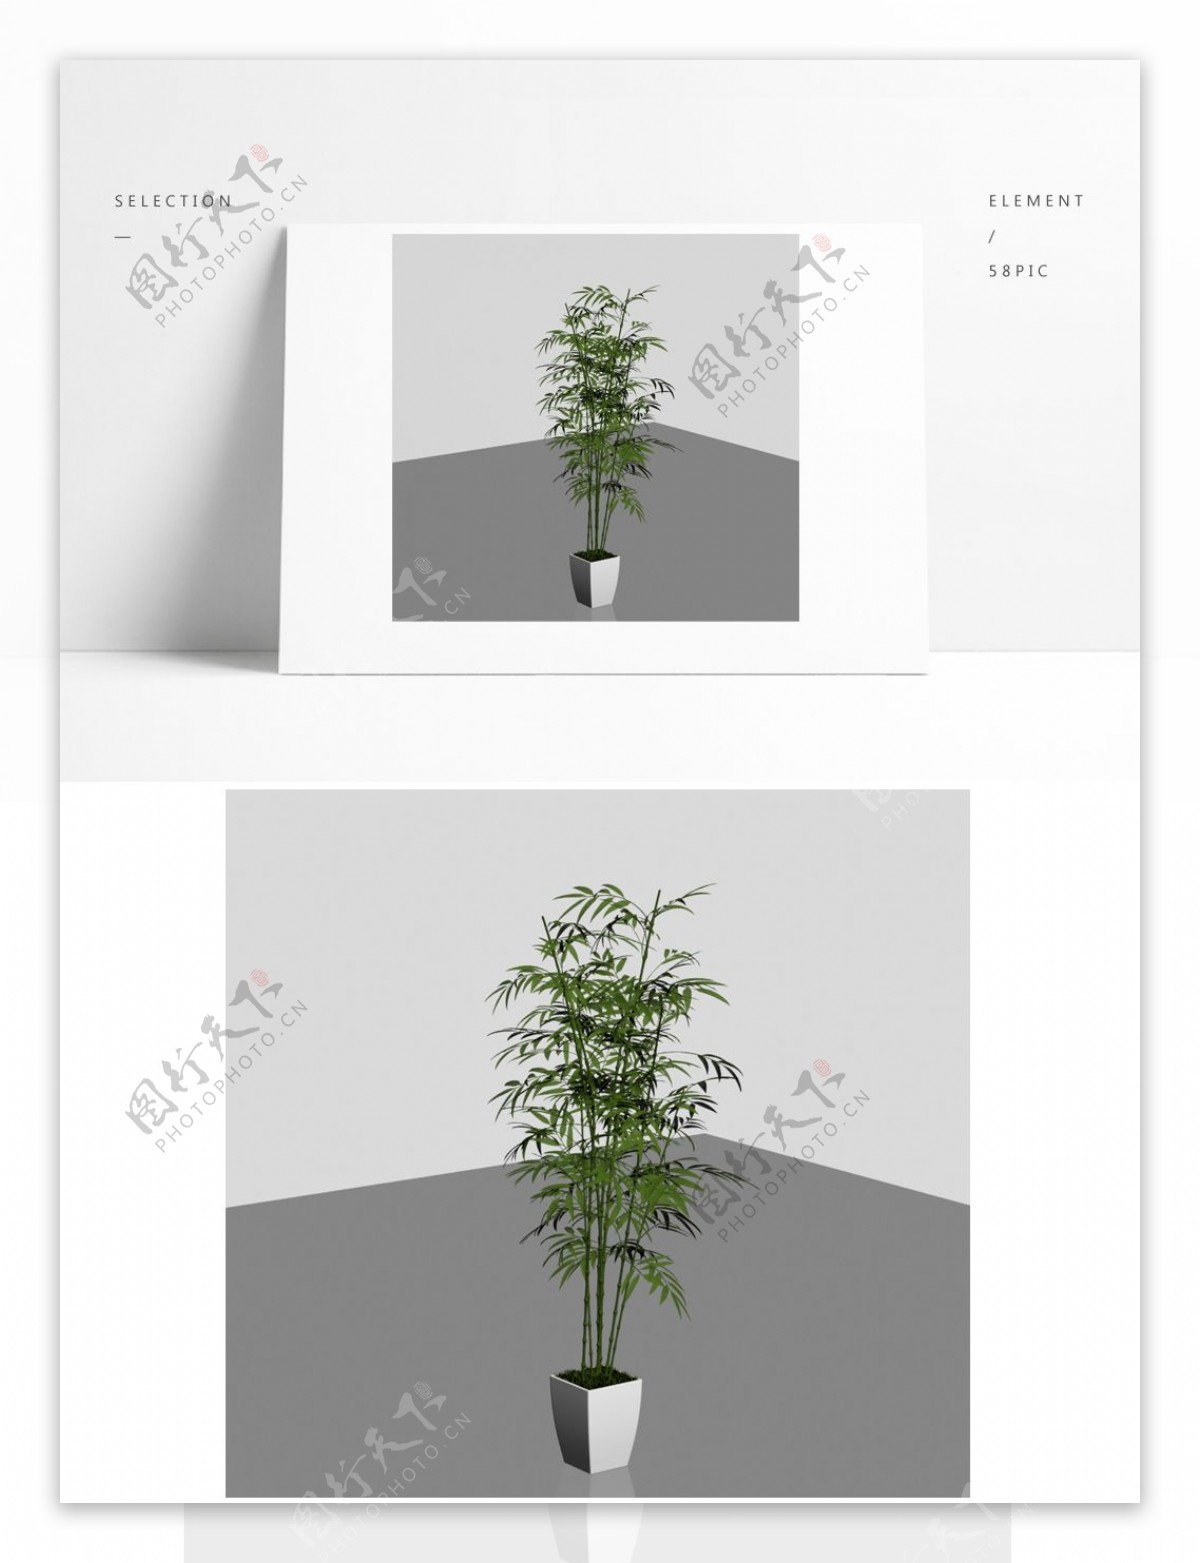 精细盆景植物模型